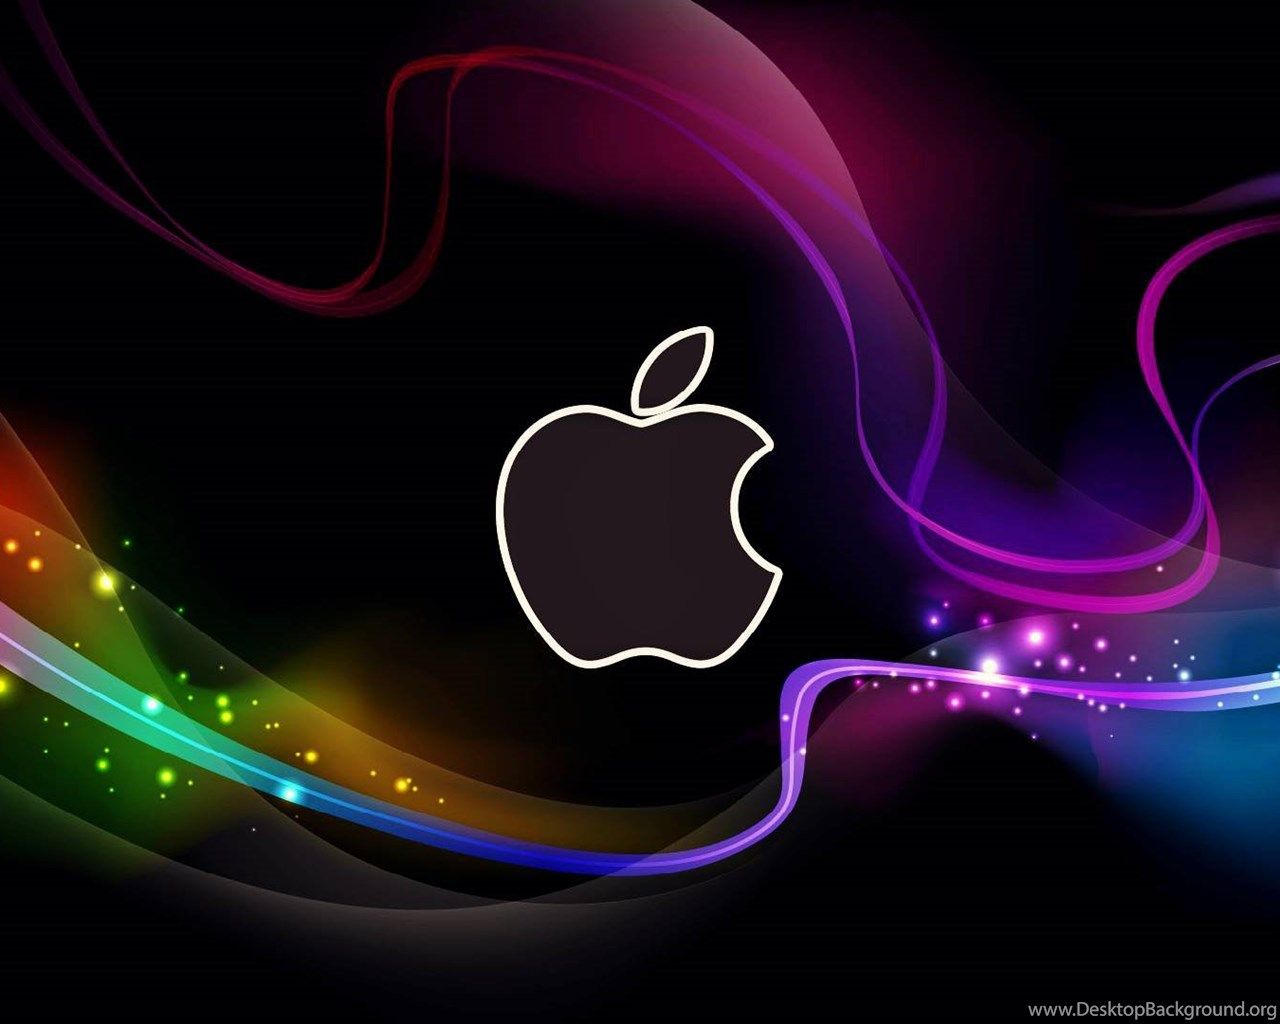 Colorful Cool Apple Wallpaper Desktop .desktopbackground.org